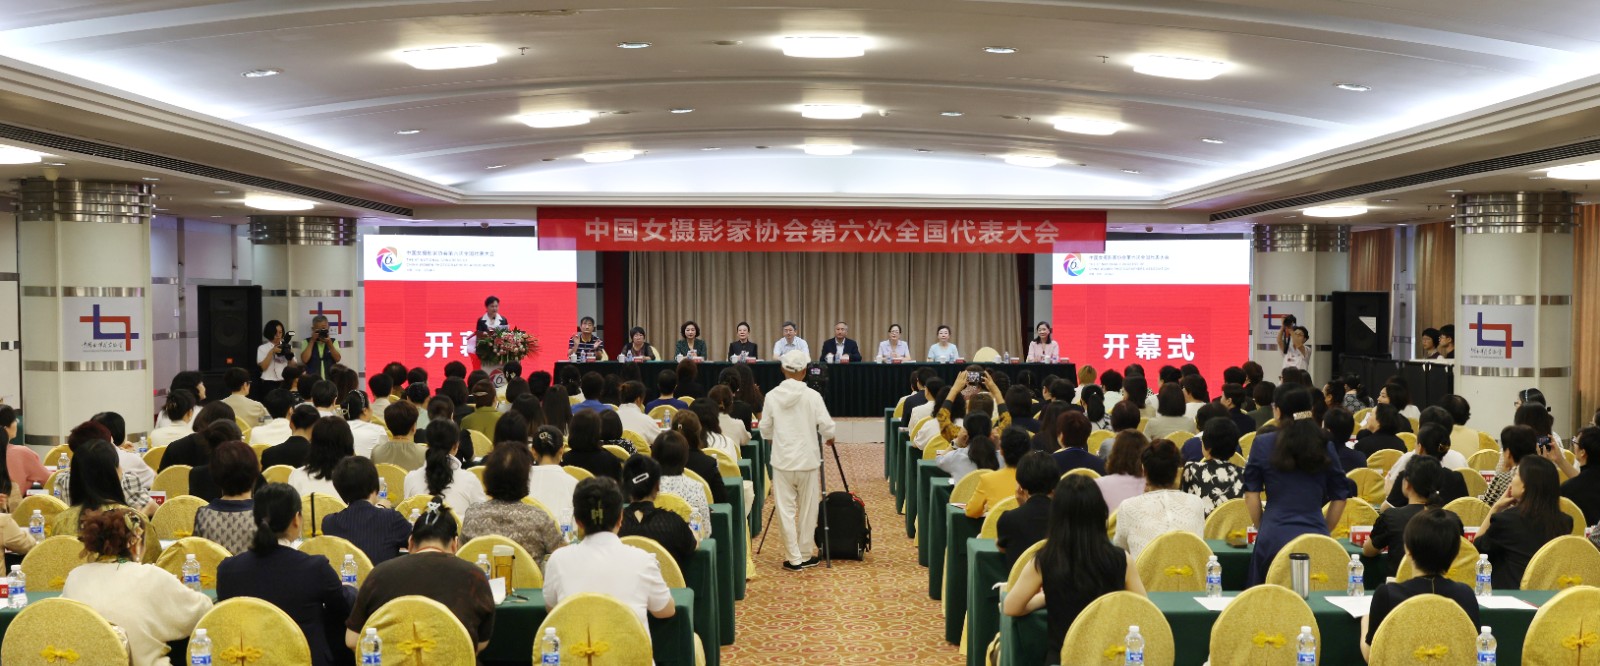 中国女摄影家协会第六次全国代表大会在京召开 吕静波当选主席